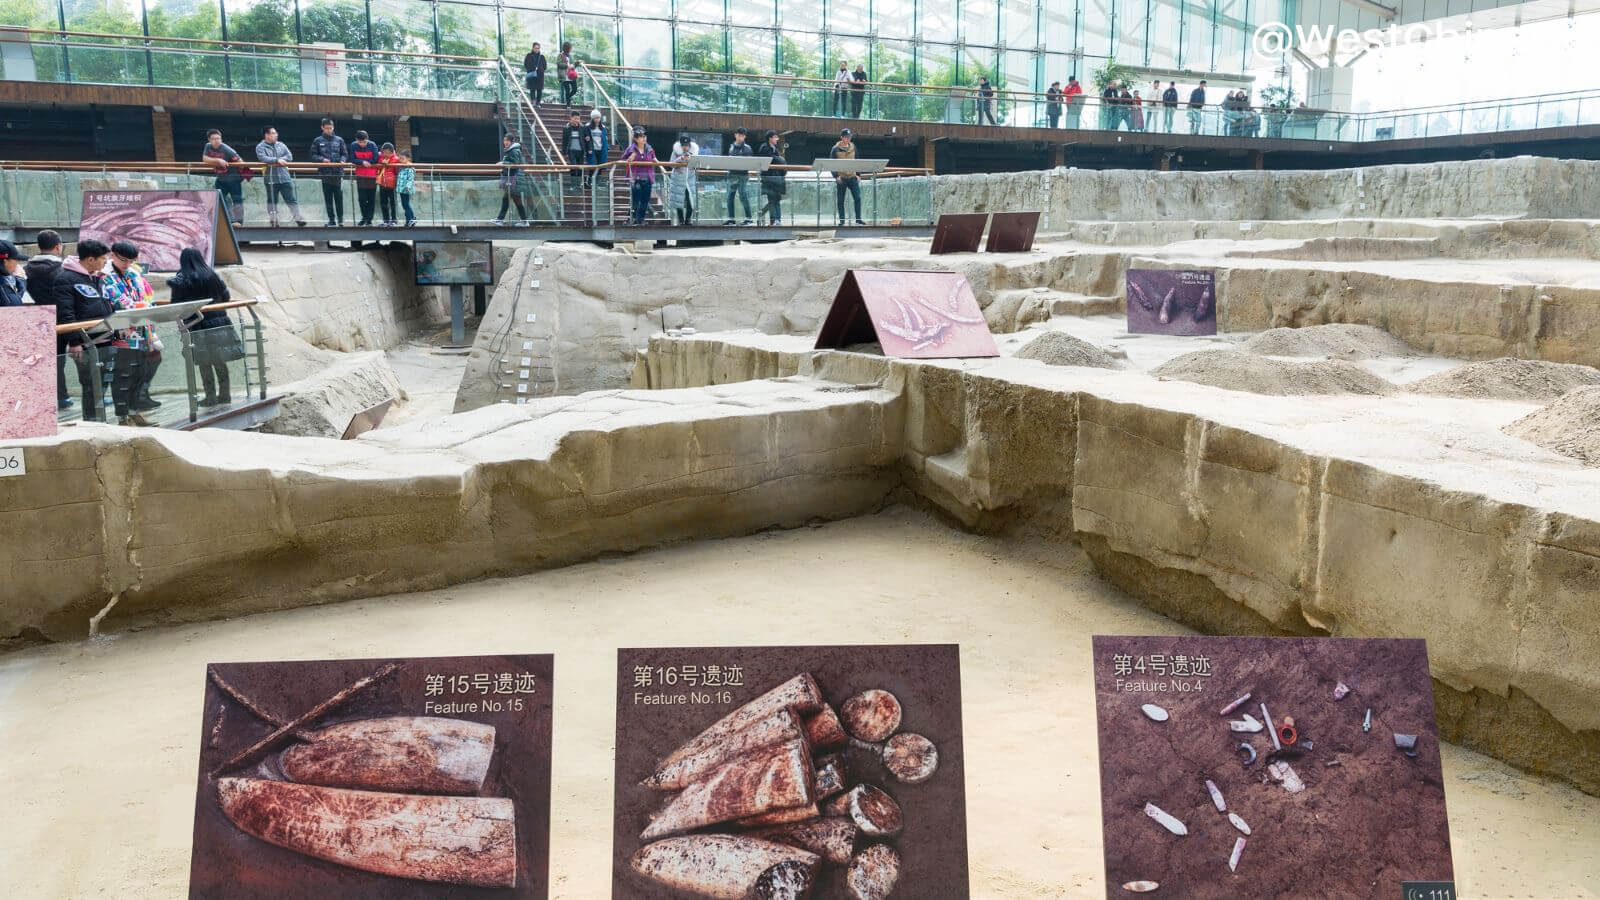 Chengdu Jinsha Site Museum